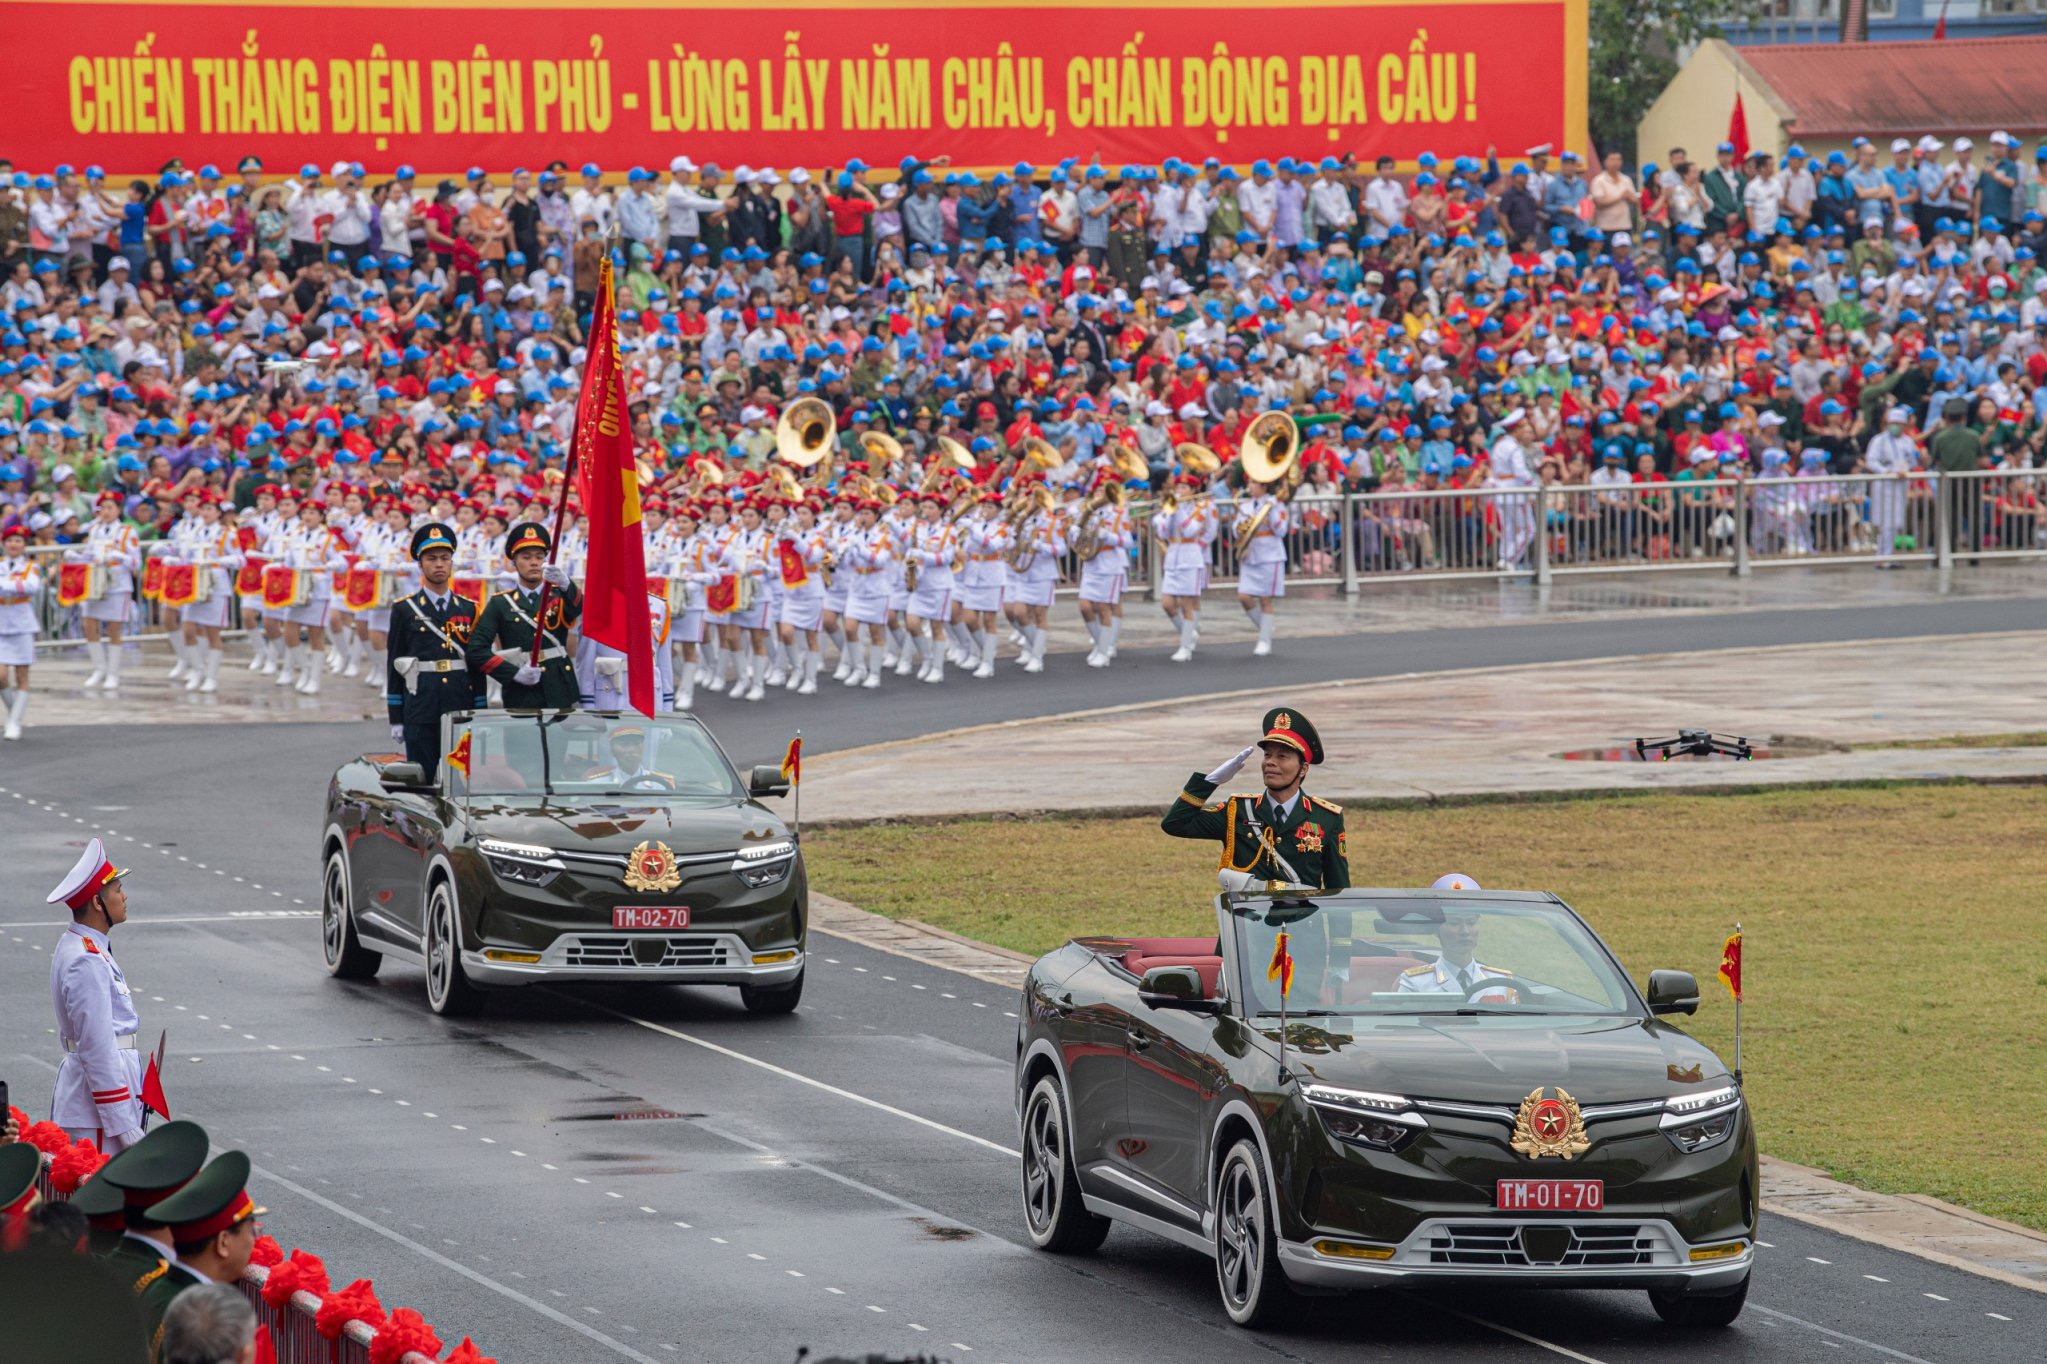 VF 8 mui trần tại lễ diễu binh chào mừng chiến thắng Điện Biên Phủ được thiết kế đặc biệt- Ảnh 1.